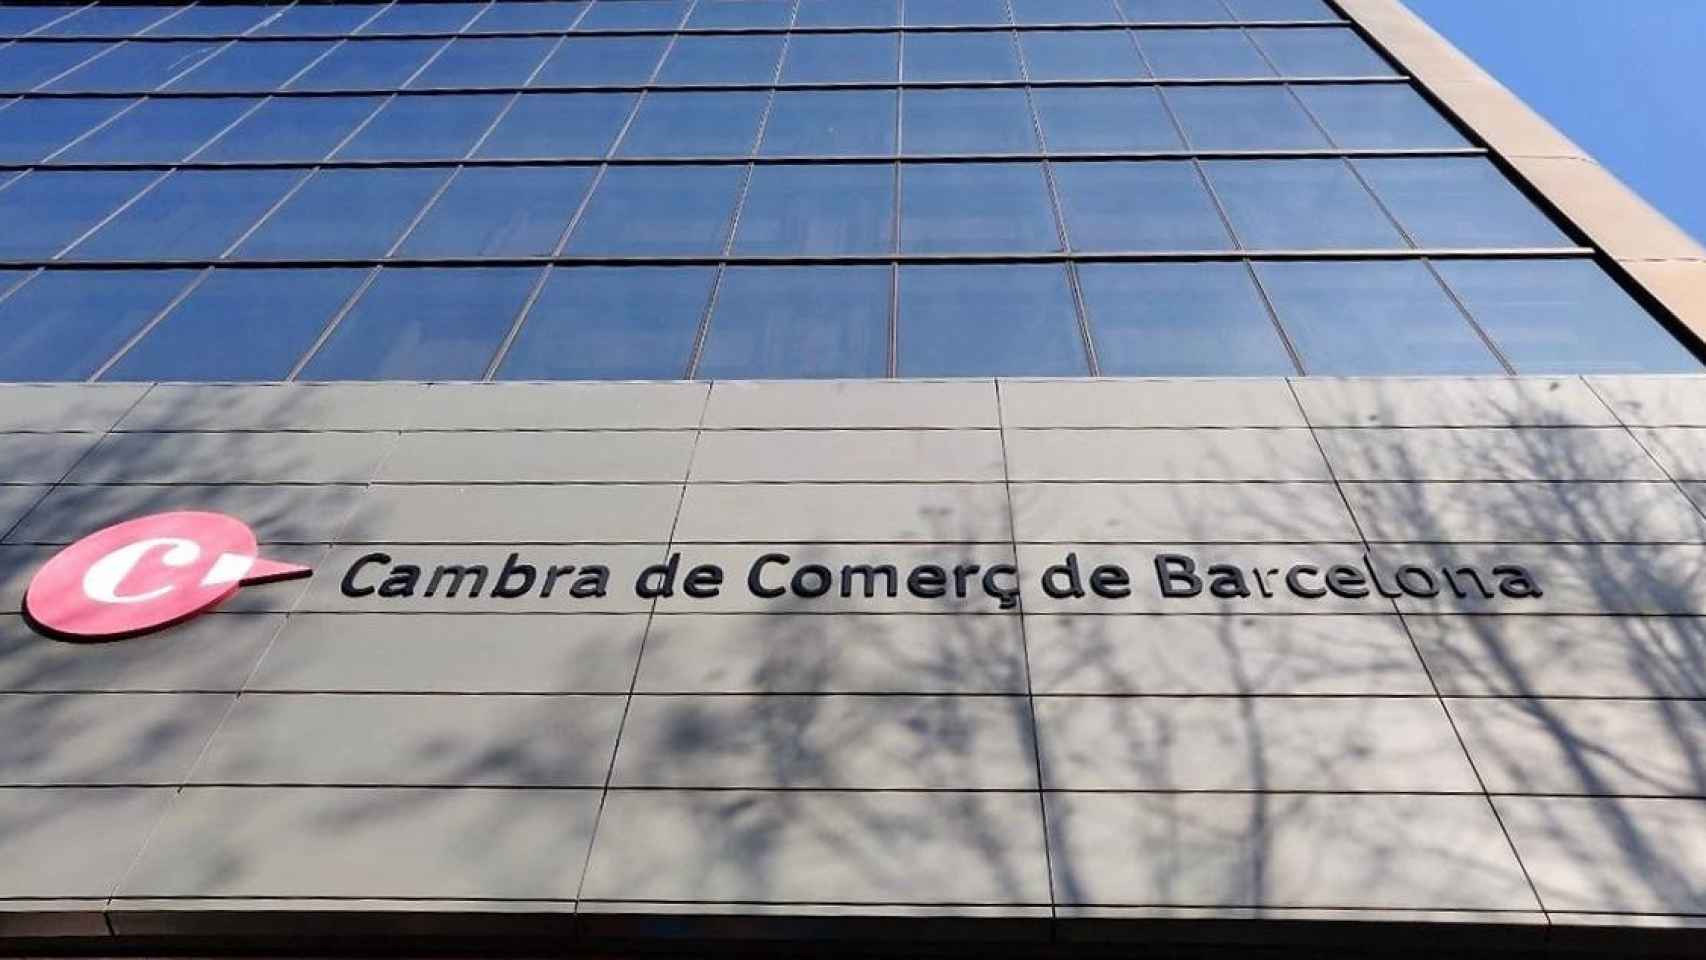 Fachada de la Cambra de Comerç de Barcelona, que garantiza el voto secreto en el manifiesto de apoyo al CxR / EUROPA PRESS